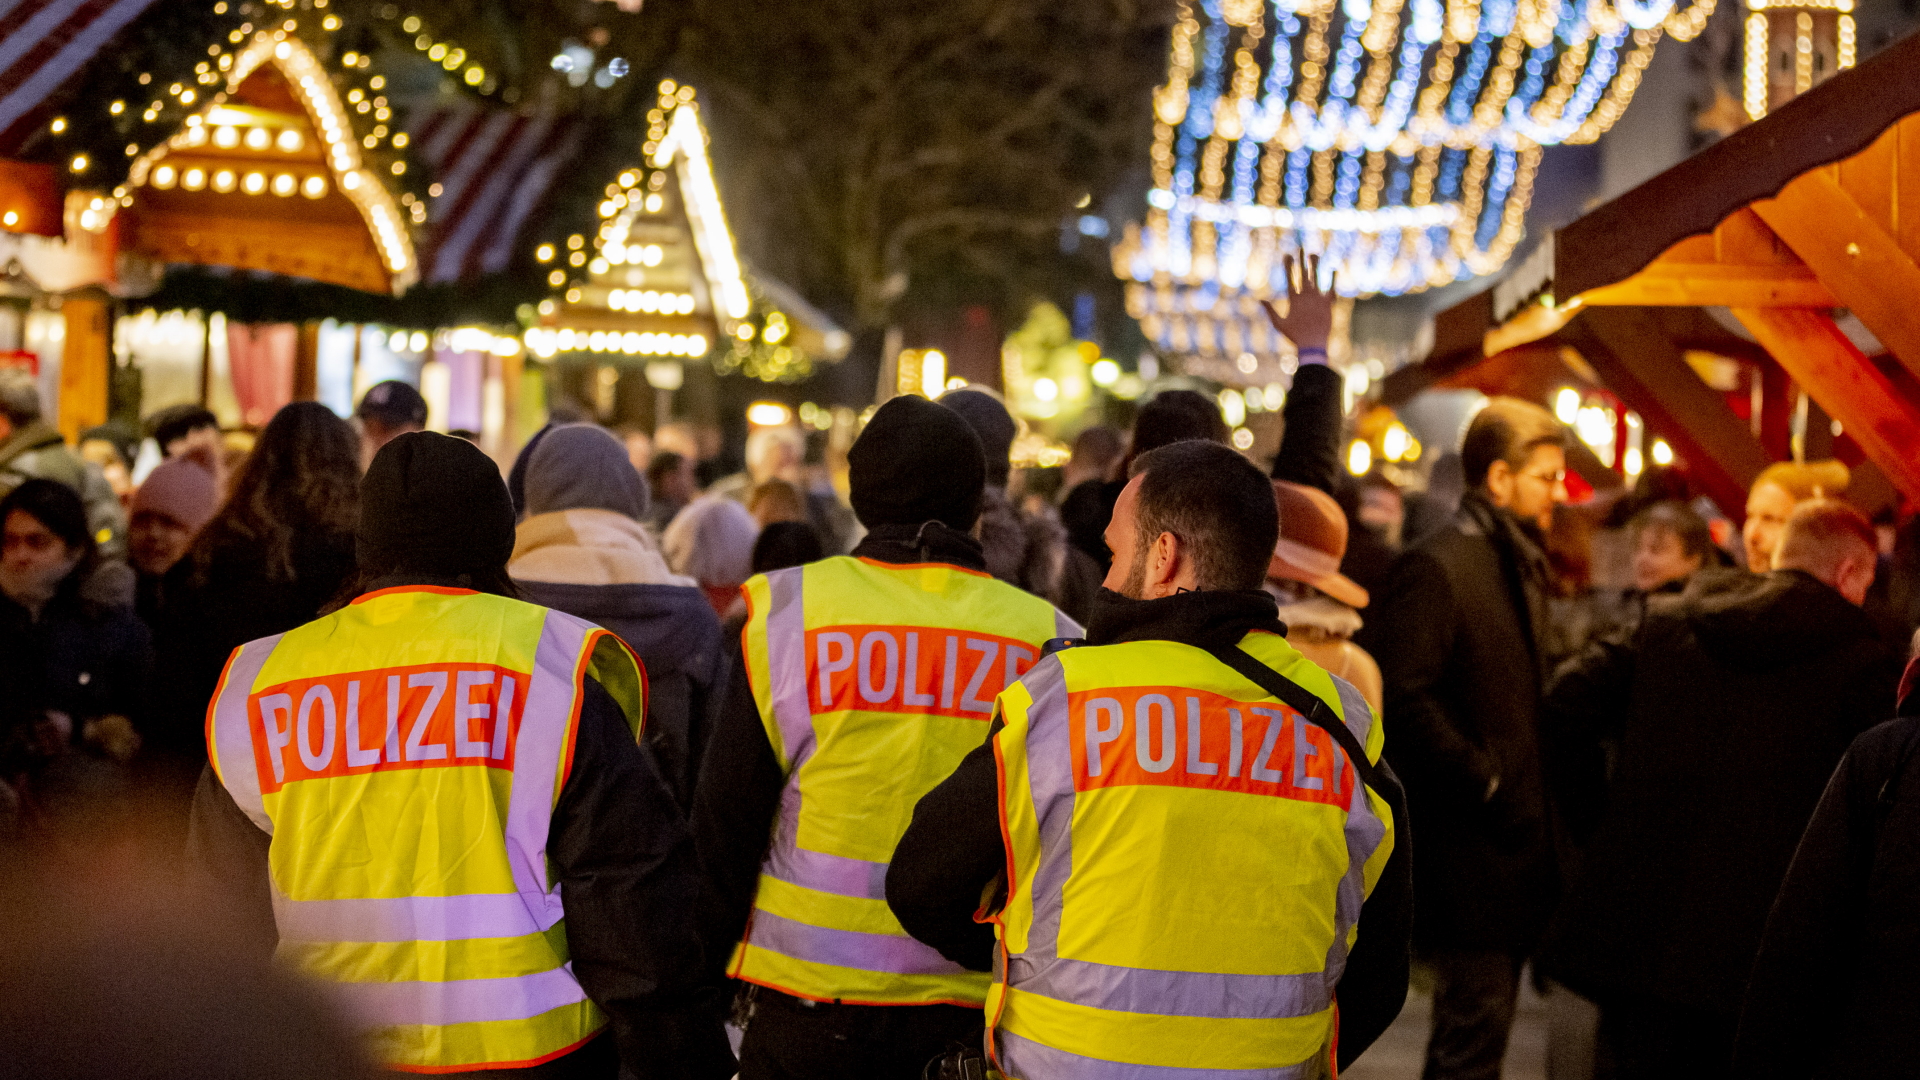 Polizisten patrouillieren auf dem Weihnachtsmarkt am Berliner Breitscheidplatz (Bild vom 10.12.2019) | dpa